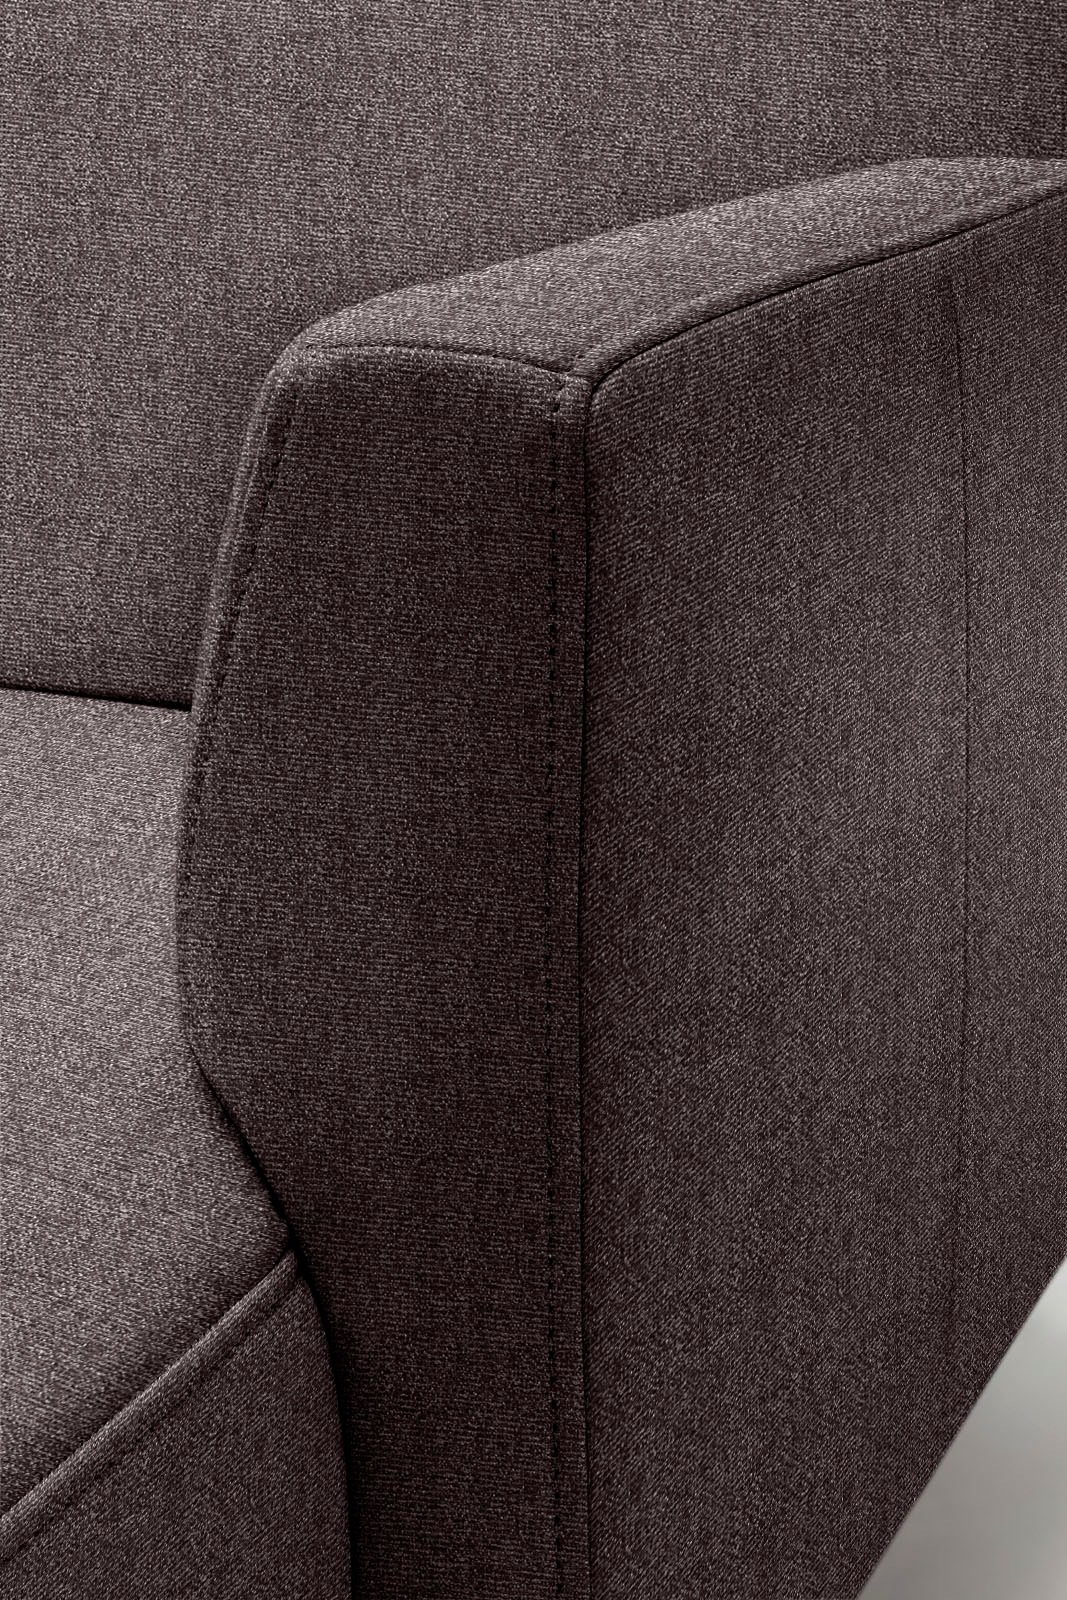 hülsta sofa Ecksofa »hs.446«, in minimalistischer, schwereloser Optik, Breite 317 cm